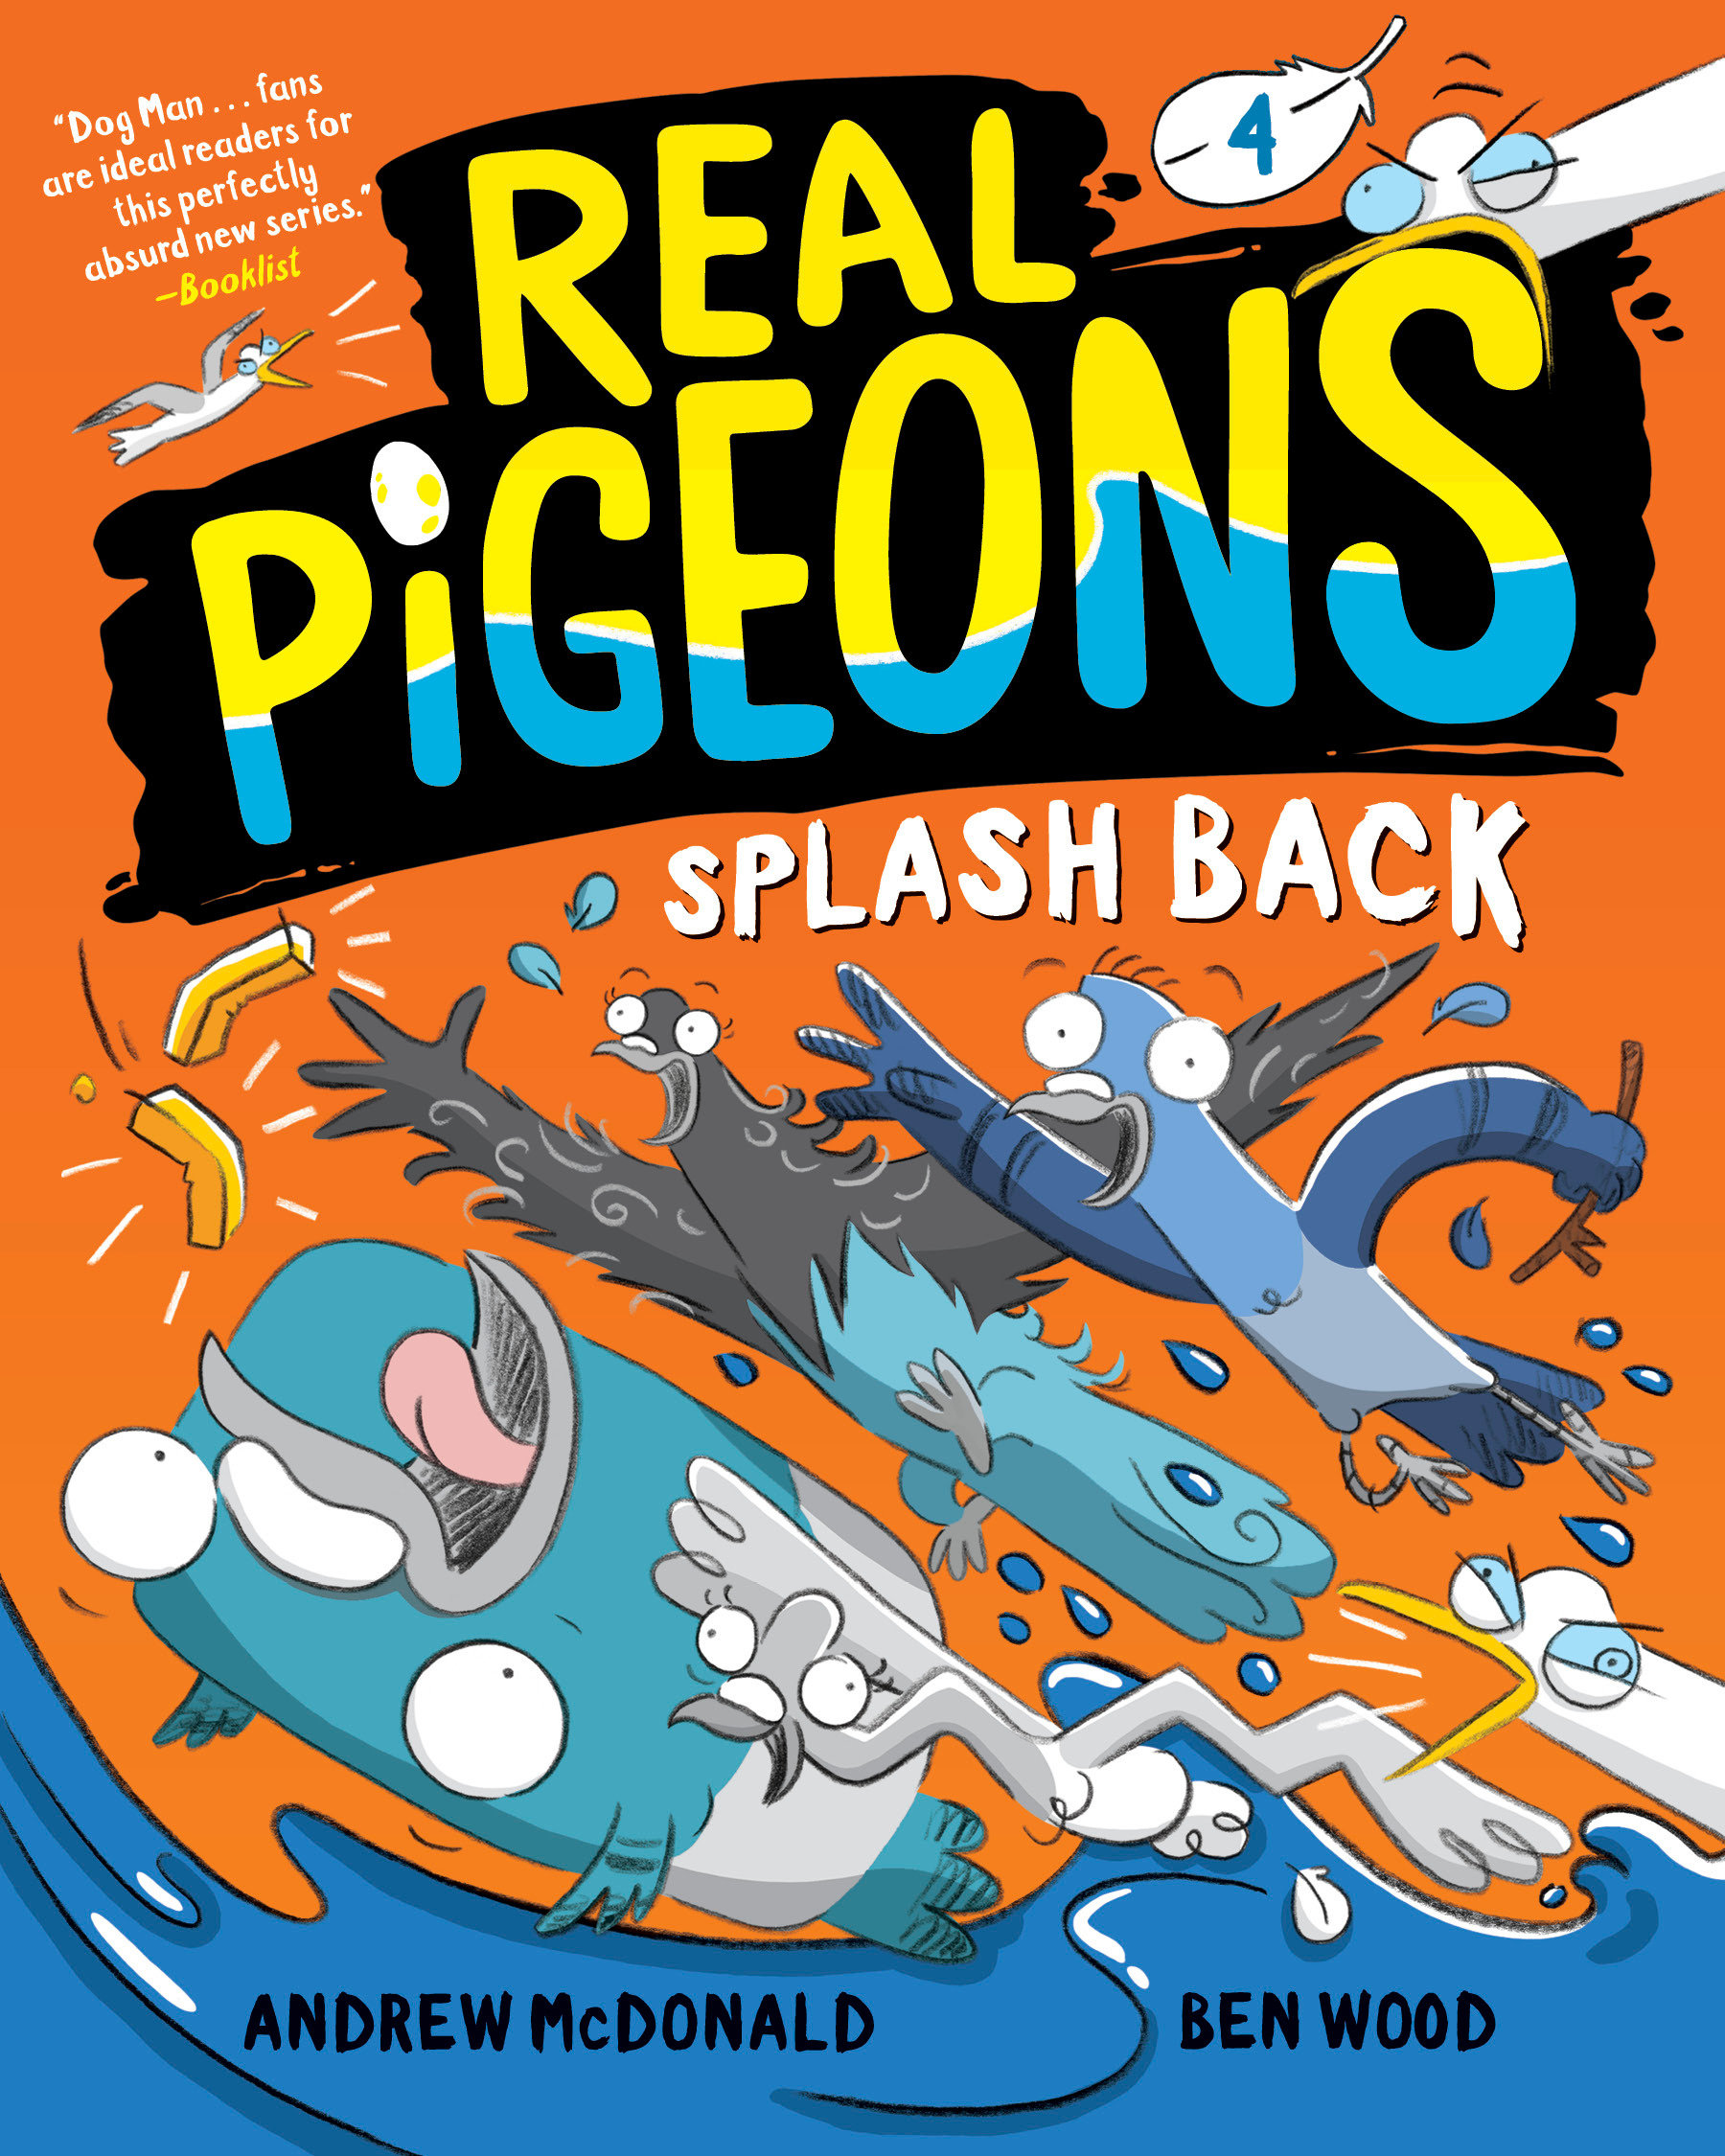 Real Pigeons Volume 4 Pslash Back 